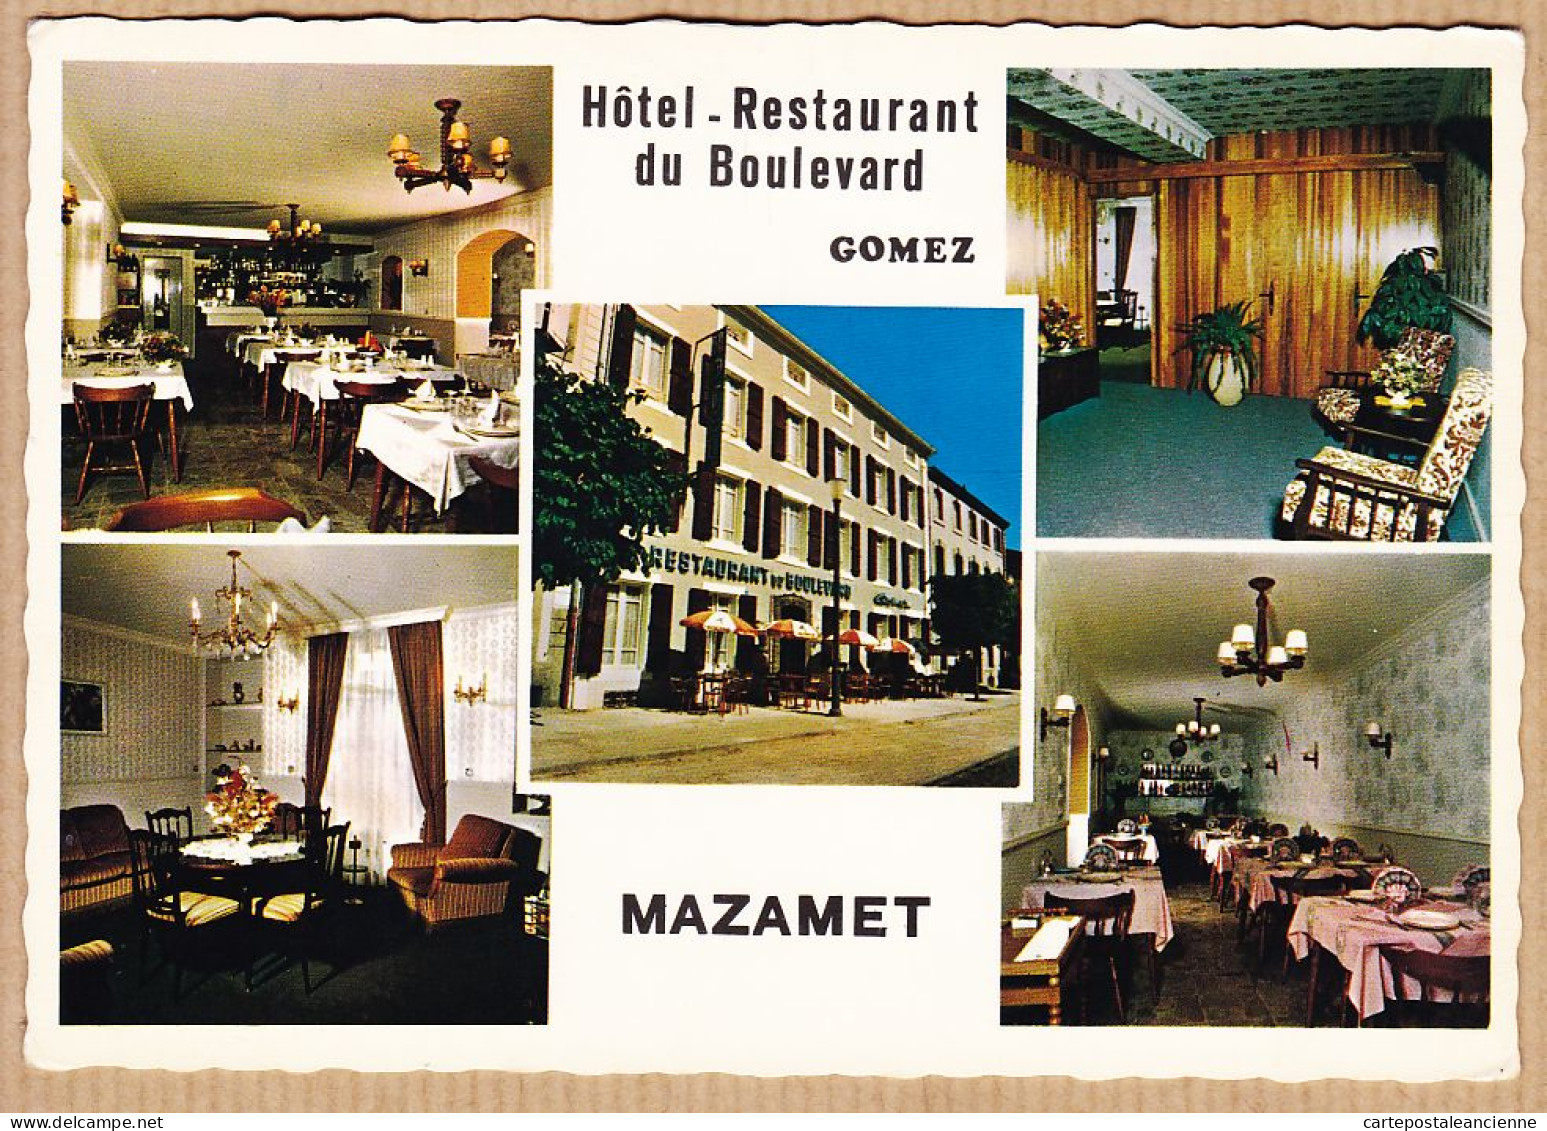 35726 / MAZAMET Tarn Hotel-Restaurant Du BOULEVARD Propriétaire GOMEZ Spécialité Espagnoles 1960s -Photo Marcel PORTE - Mazamet